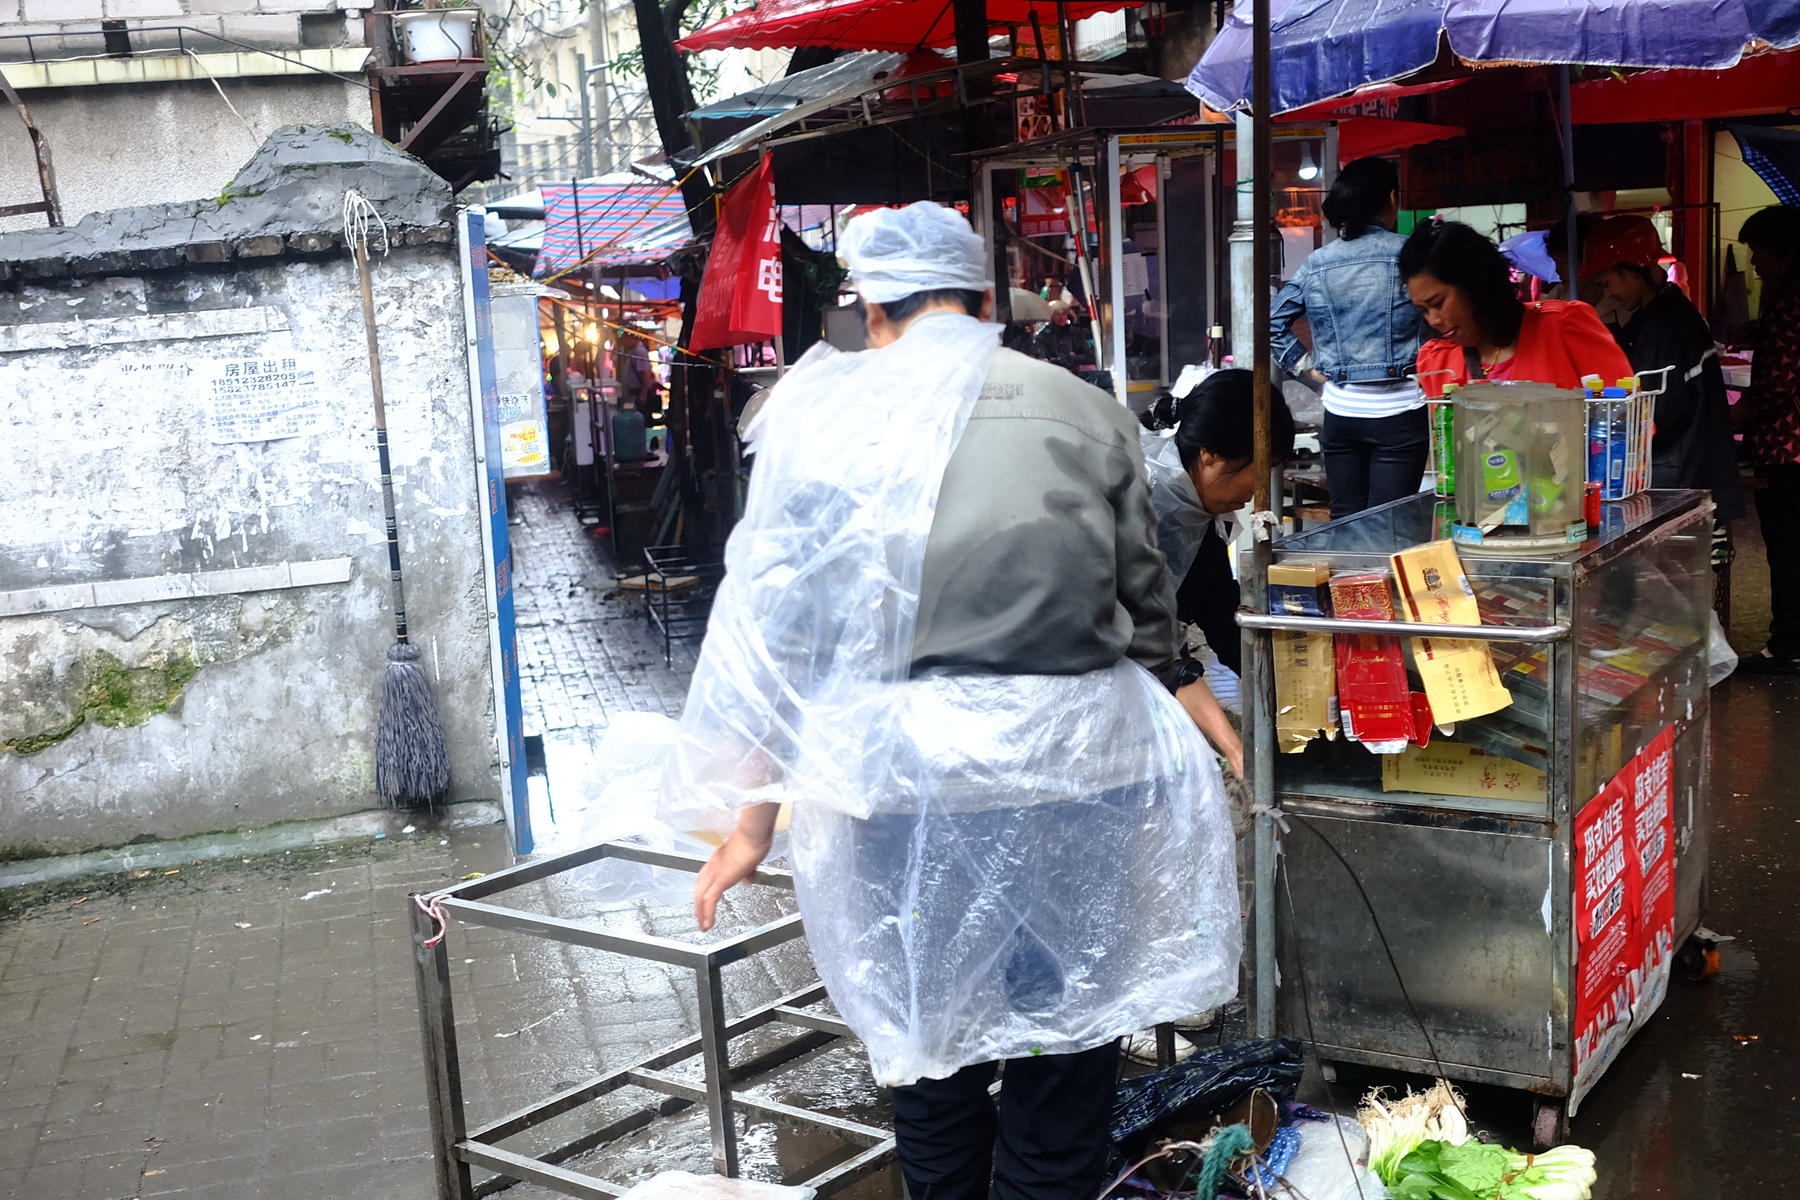 下雨时做什么小生意赚钱 下雨天能做的小生意